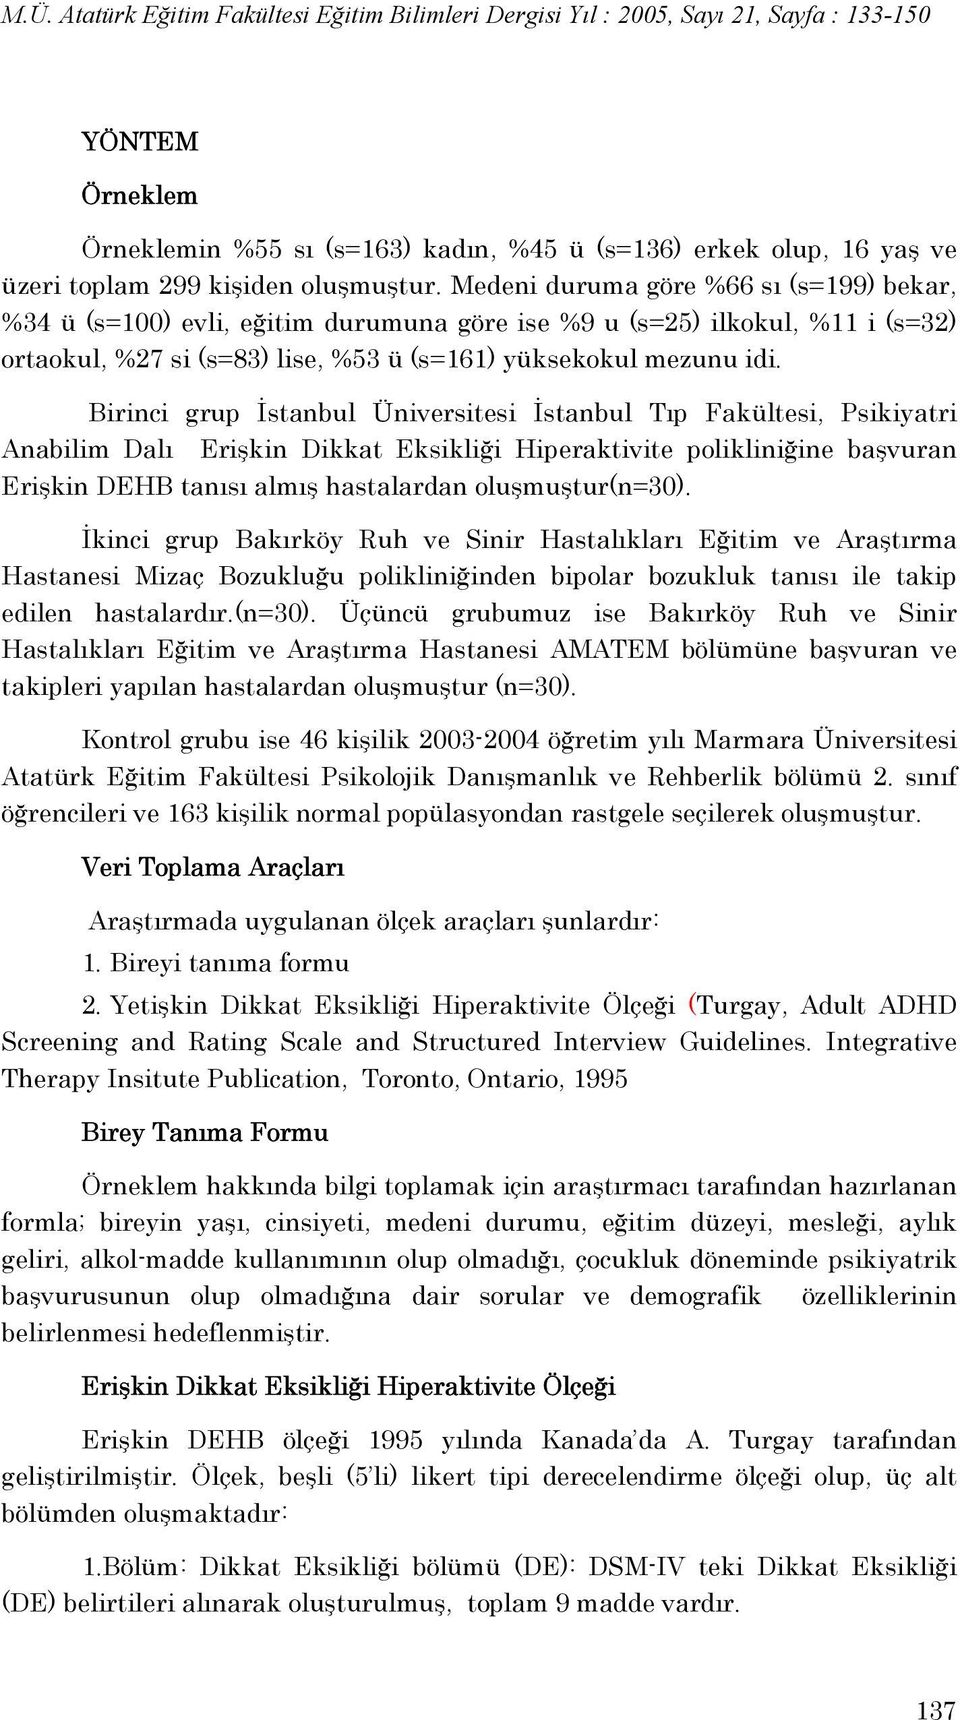 Birinci grup İstanbul Üniversitesi İstanbul Tıp Fakültesi, Psikiyatri Anabilim Dalı Erişkin Dikkat Eksikliği Hiperaktivite polikliniğine başvuran Erişkin DEHB tanısı almış hastalardan